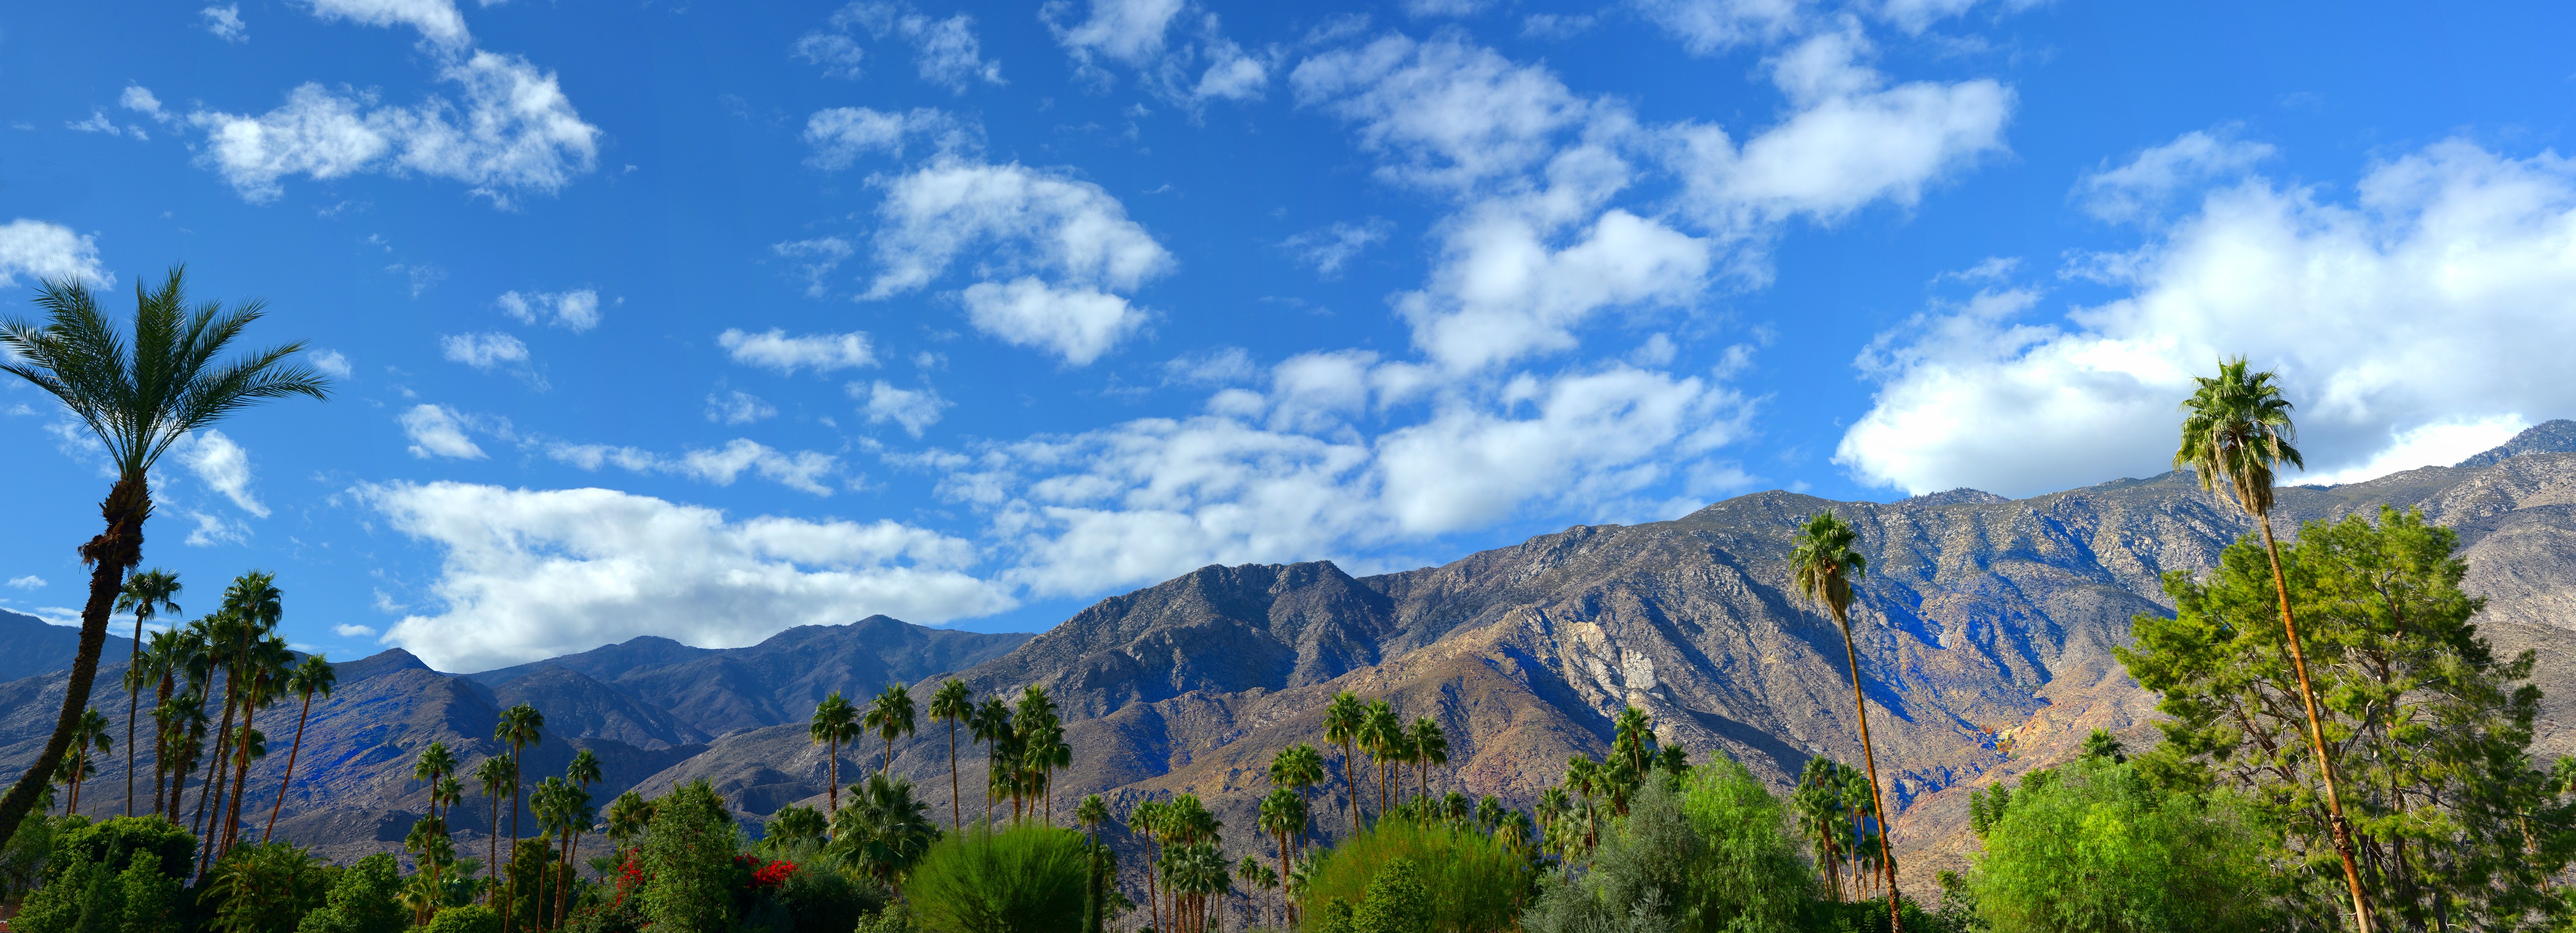 5 coisas para fazer sem carteira em Palm Springs 